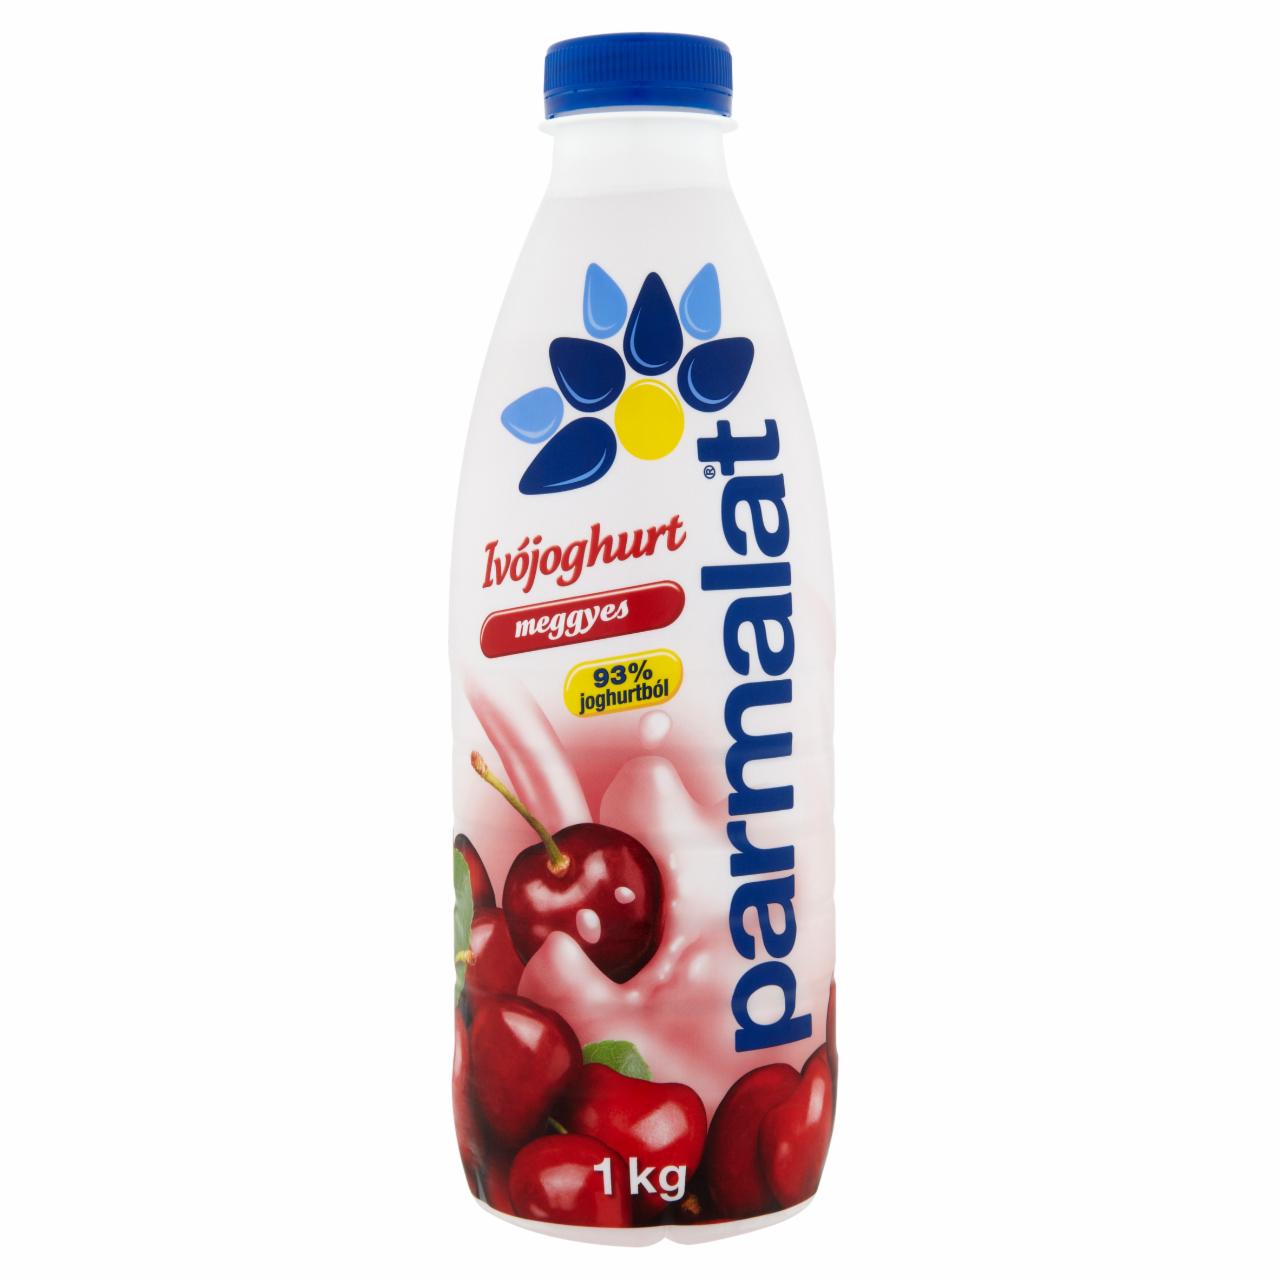 Képek - Parmalat meggyes ivójoghurt 1 kg